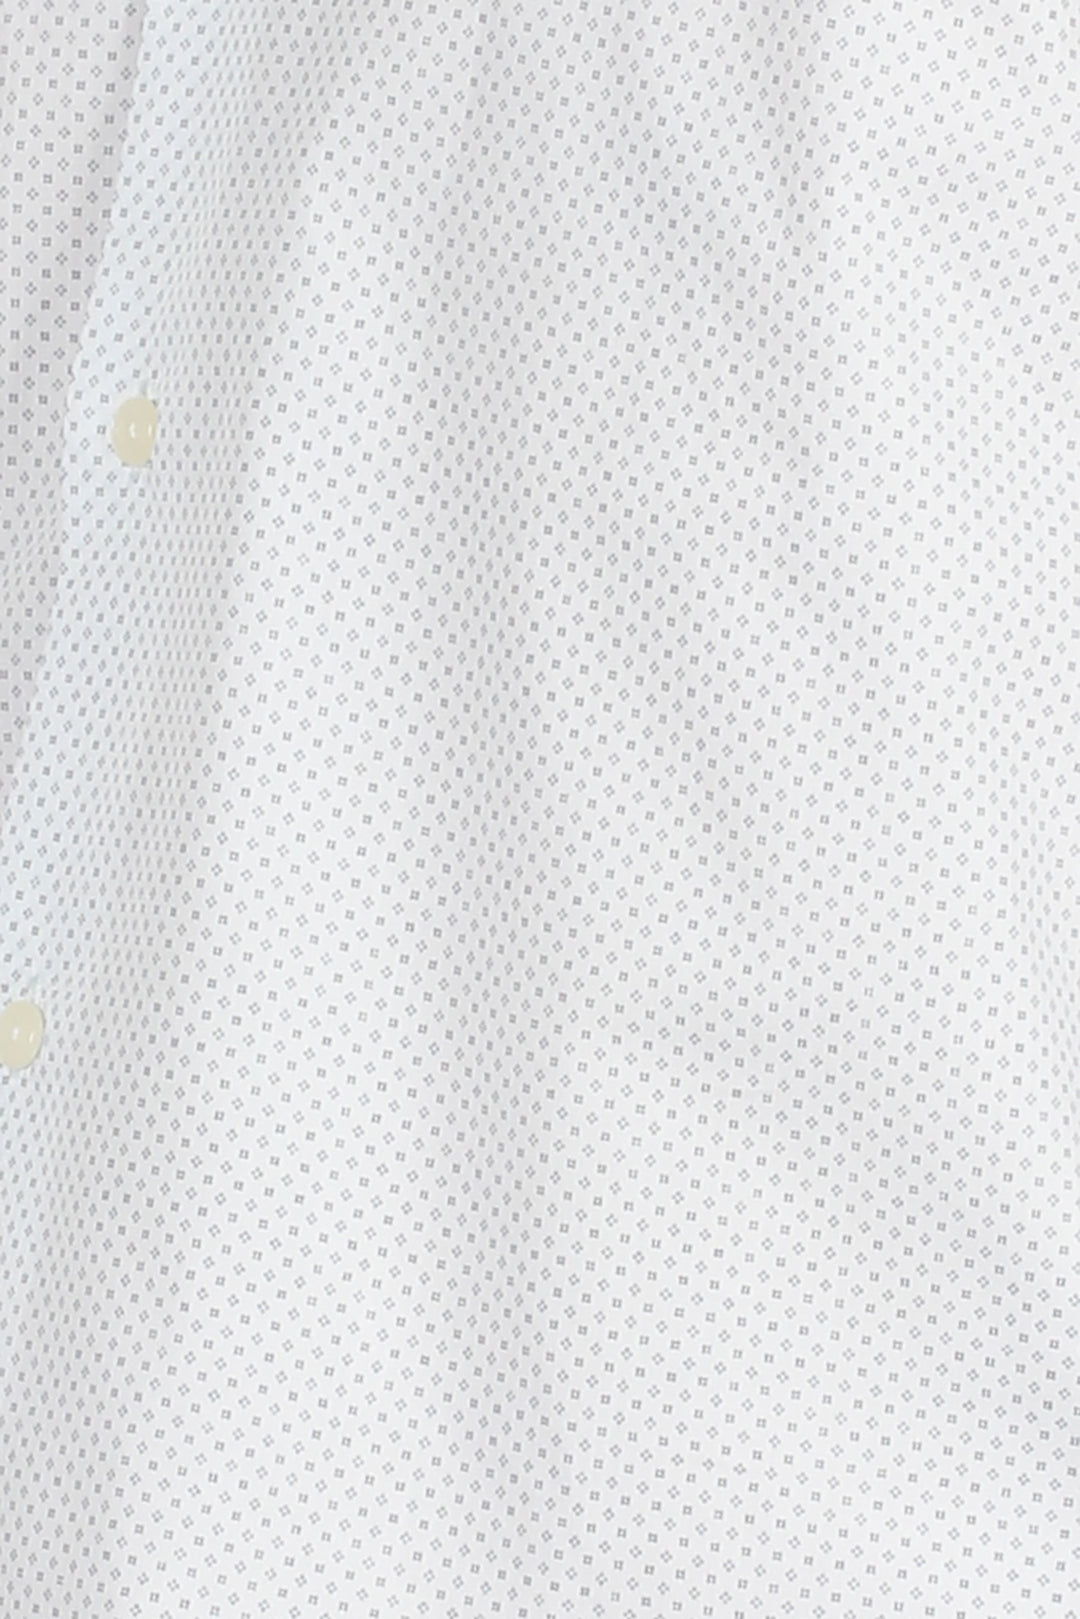 Camicia da uomo bianca con microfantasia a contrasto